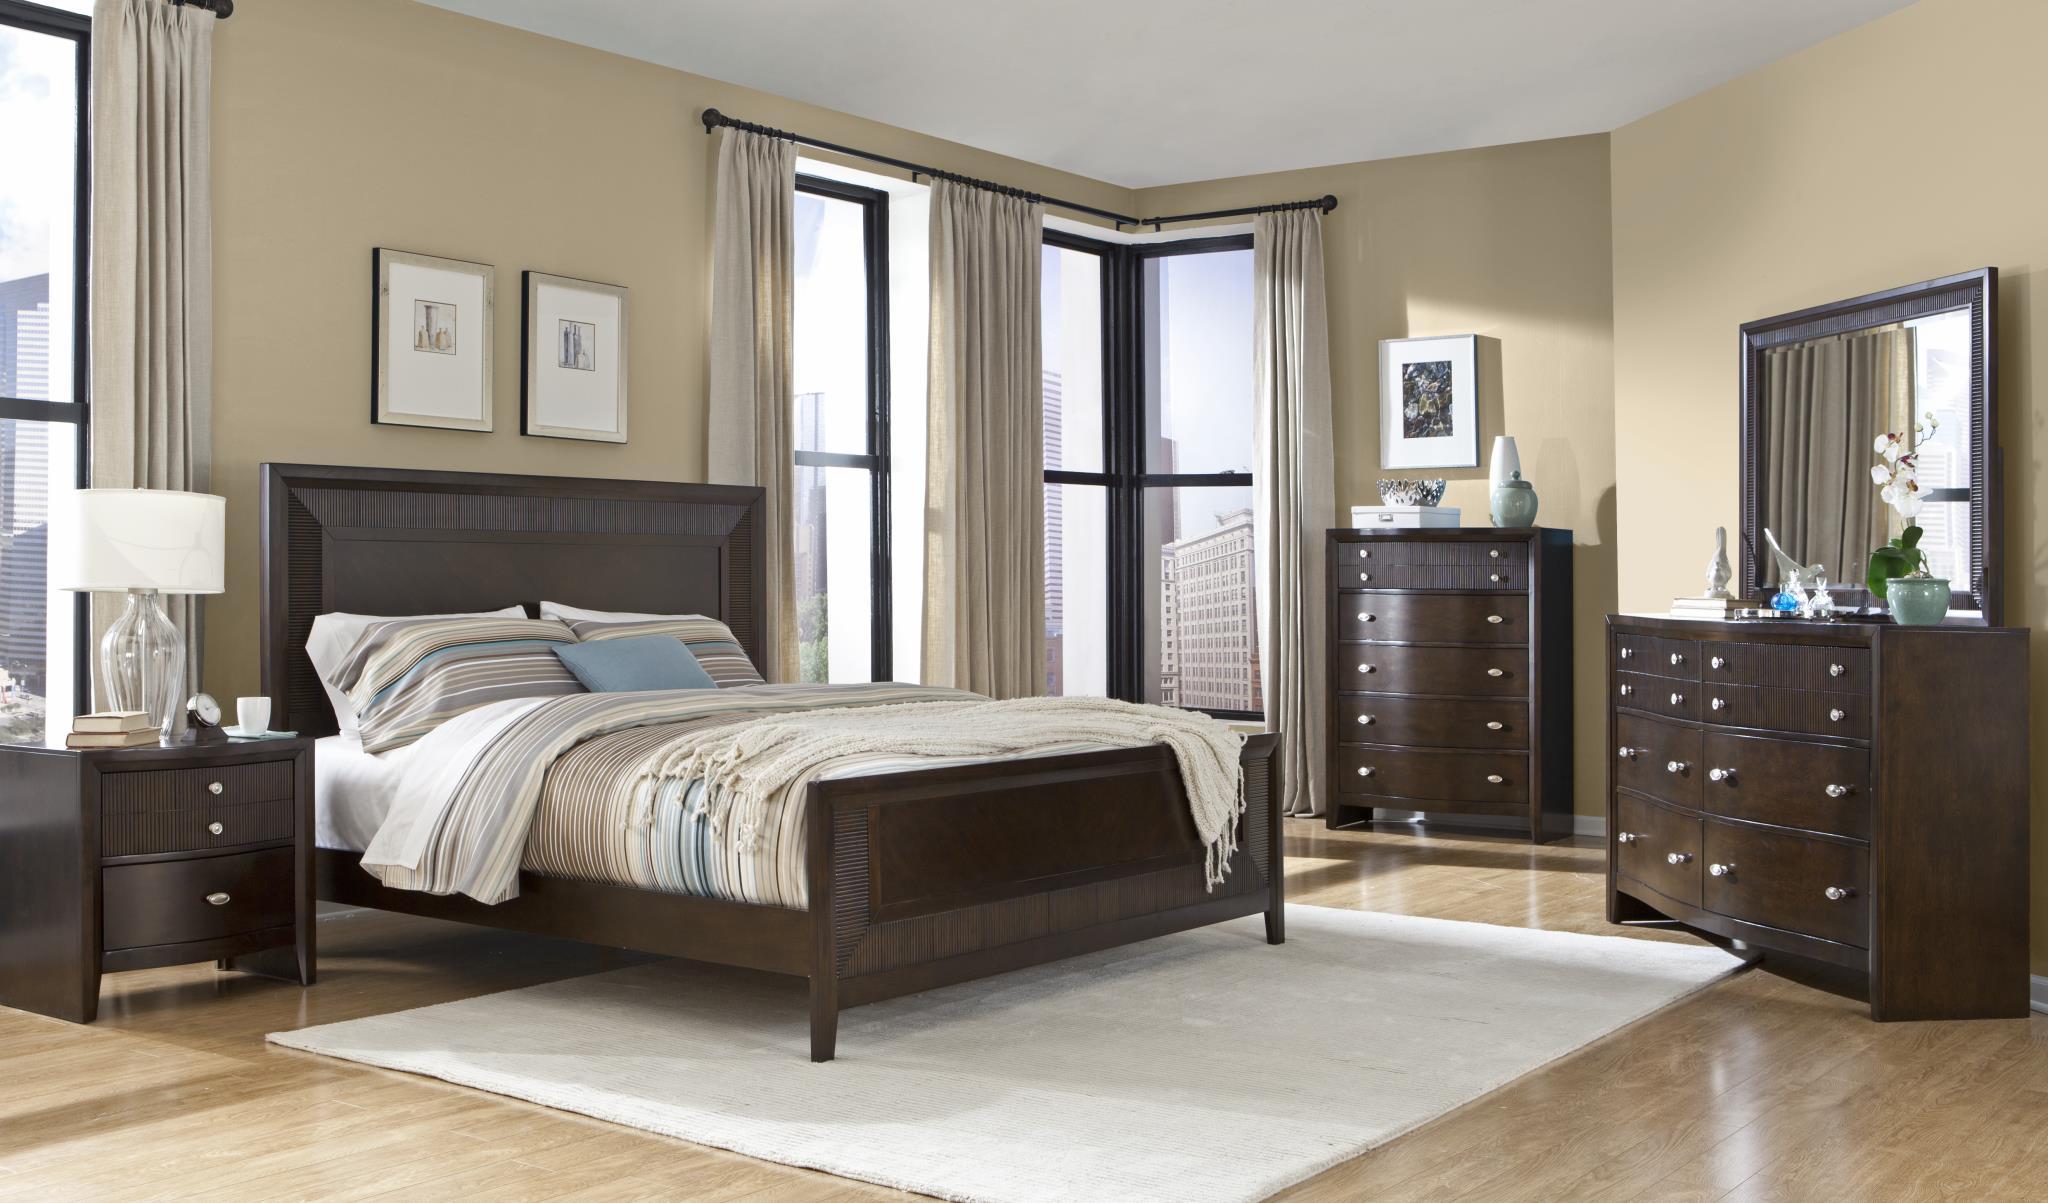 

    
Soflex Elora Espresso Finish Ribbed Wood Queen Bedroom Set 6Pcs Contemporary
